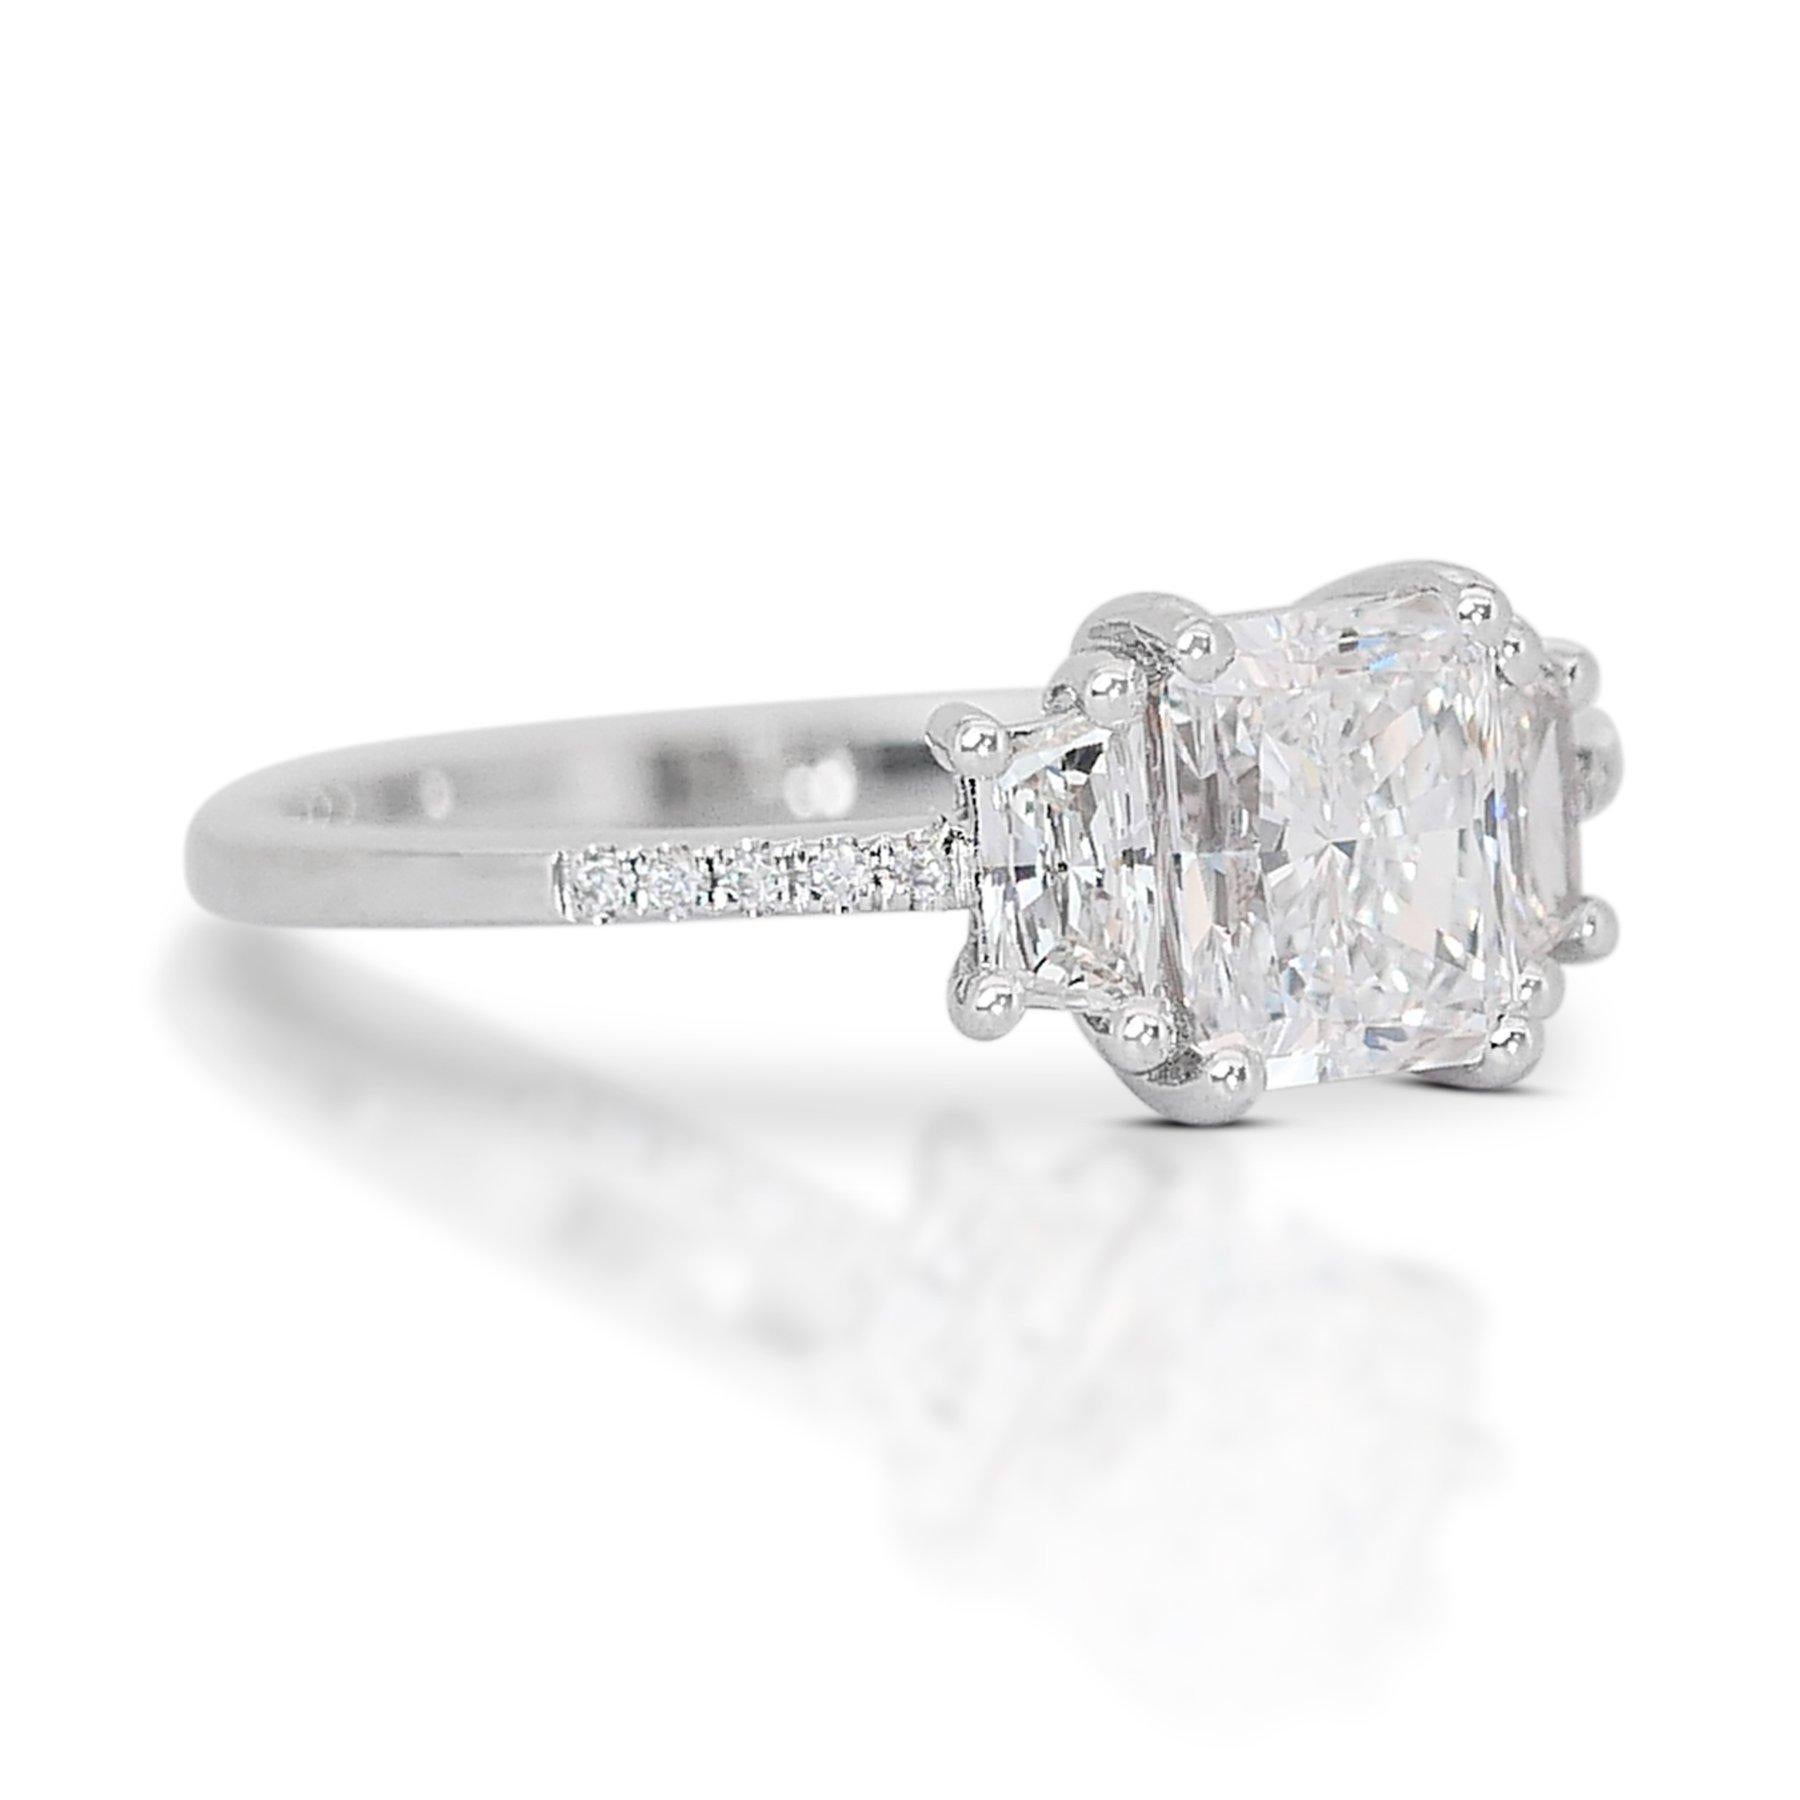 Schillernder 1,32 Karat Diamant 3-Stein-Ring aus 18 Karat Weißgold - GIA zertifiziert

Dieser exquisite Ring besticht durch sein einzigartiges und modernes Design, das in glänzendem 18-karätigem Weißgold gefertigt ist. Das Herzstück ist ein